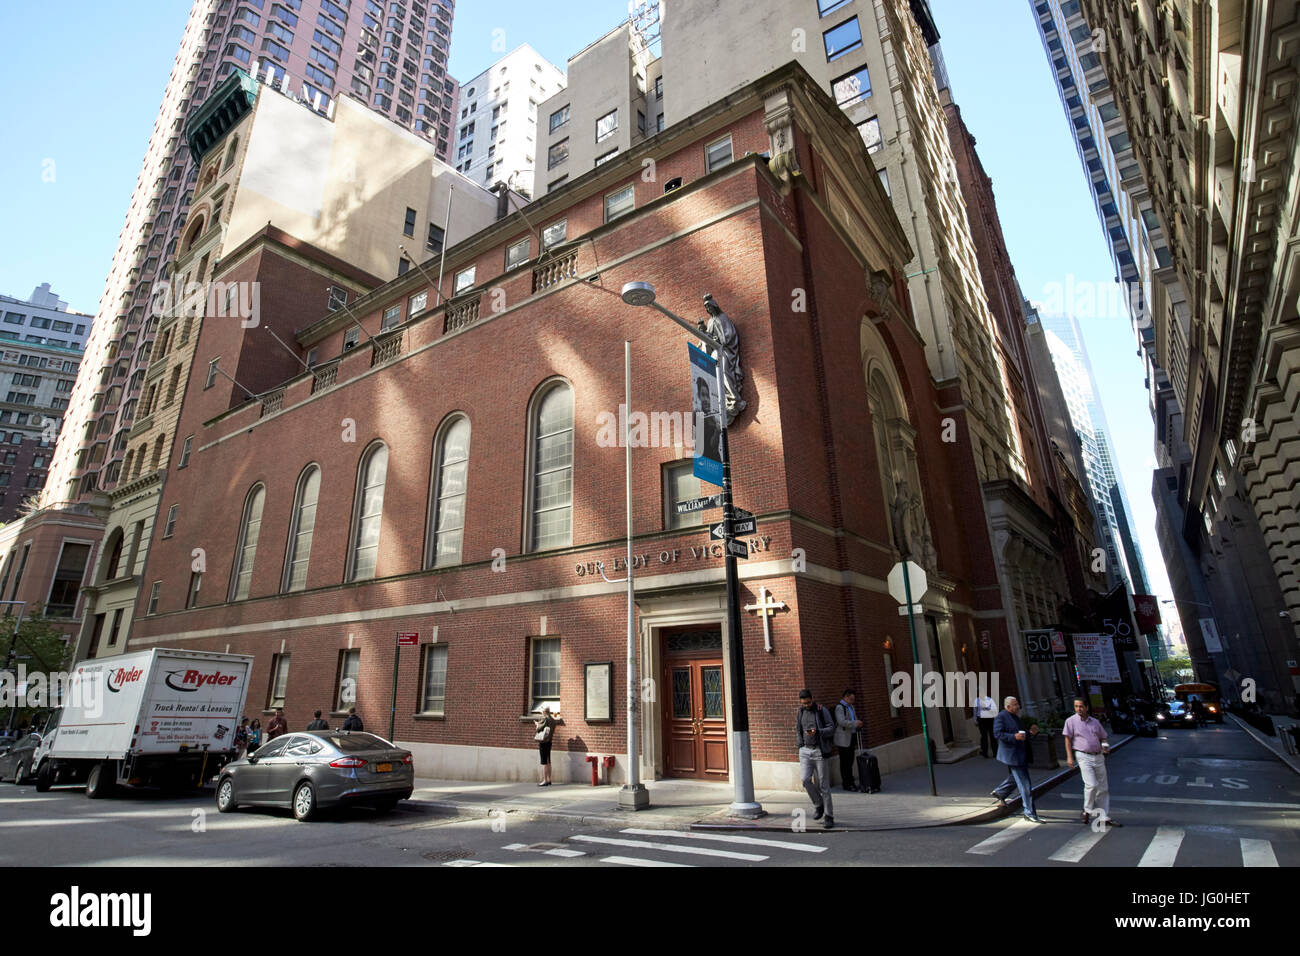 Eglise Notre Dame de la victoire de la ville de New York USA Banque D'Images